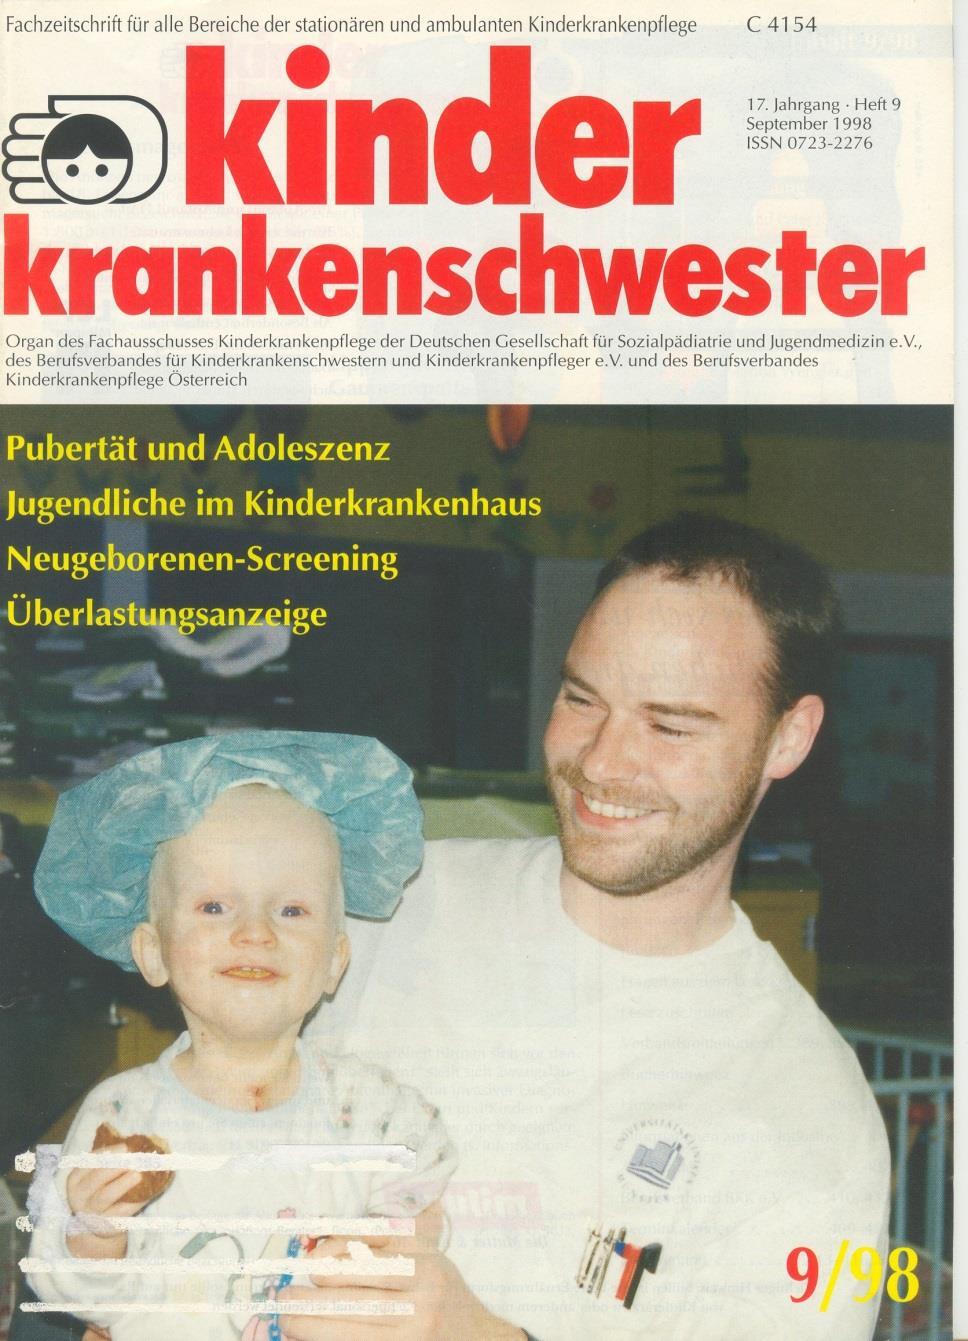 1980 Gründung Arbeitskreis der Kinderkrankenschwestern (AKK) e.v.